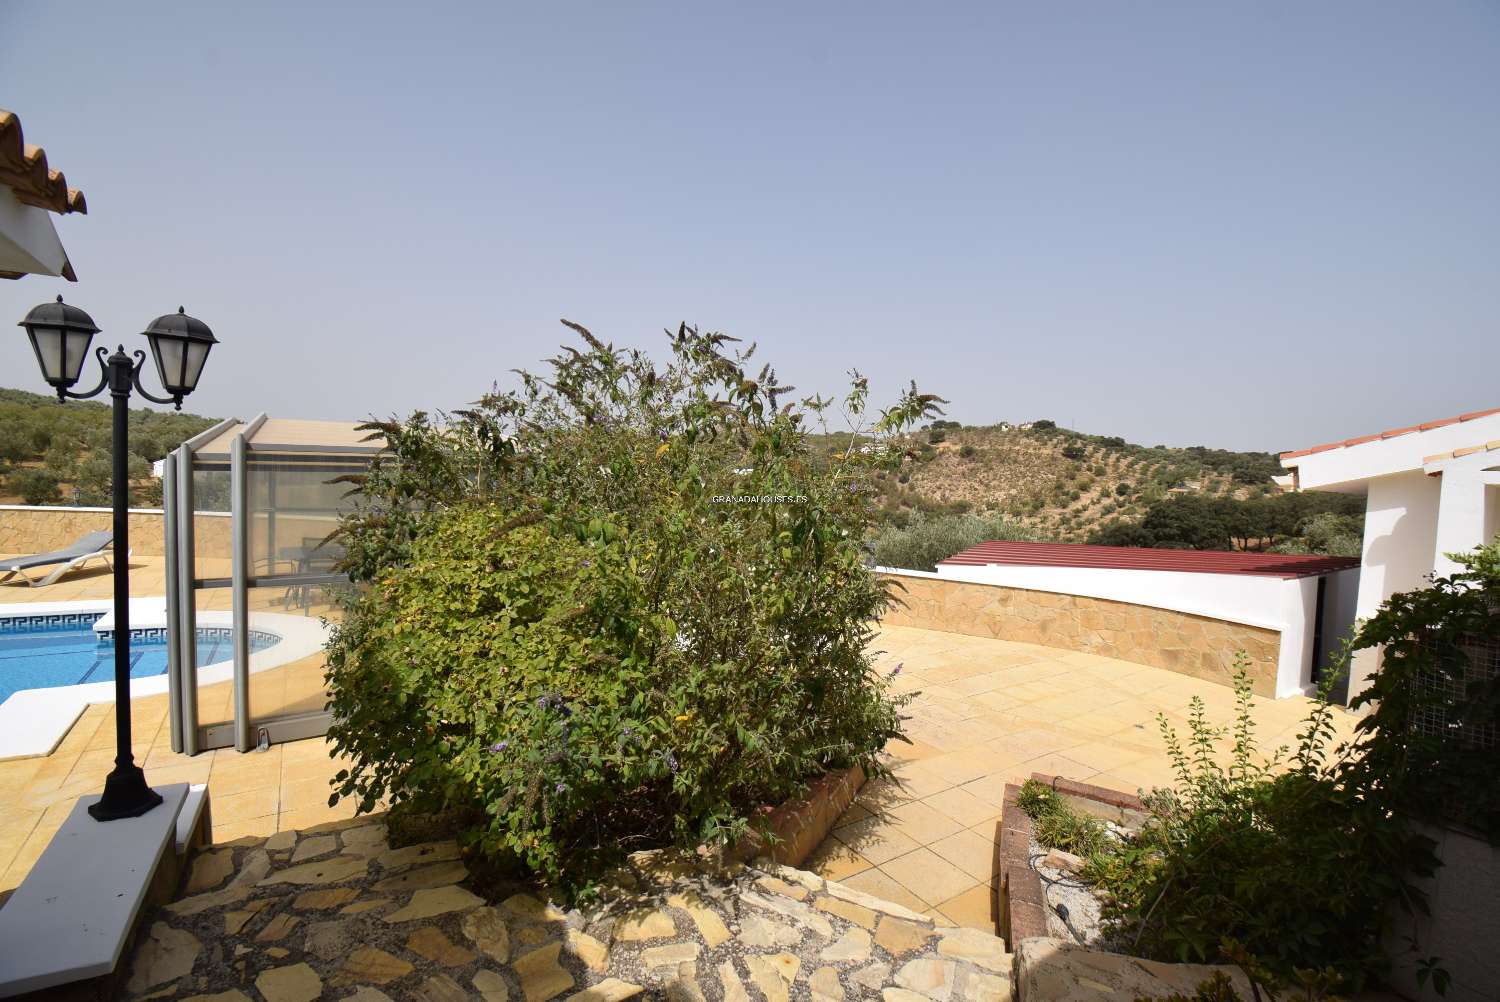 Fantastica villa di campagna con dependance, giardino, grande piscina e splendida vista sulle montagne